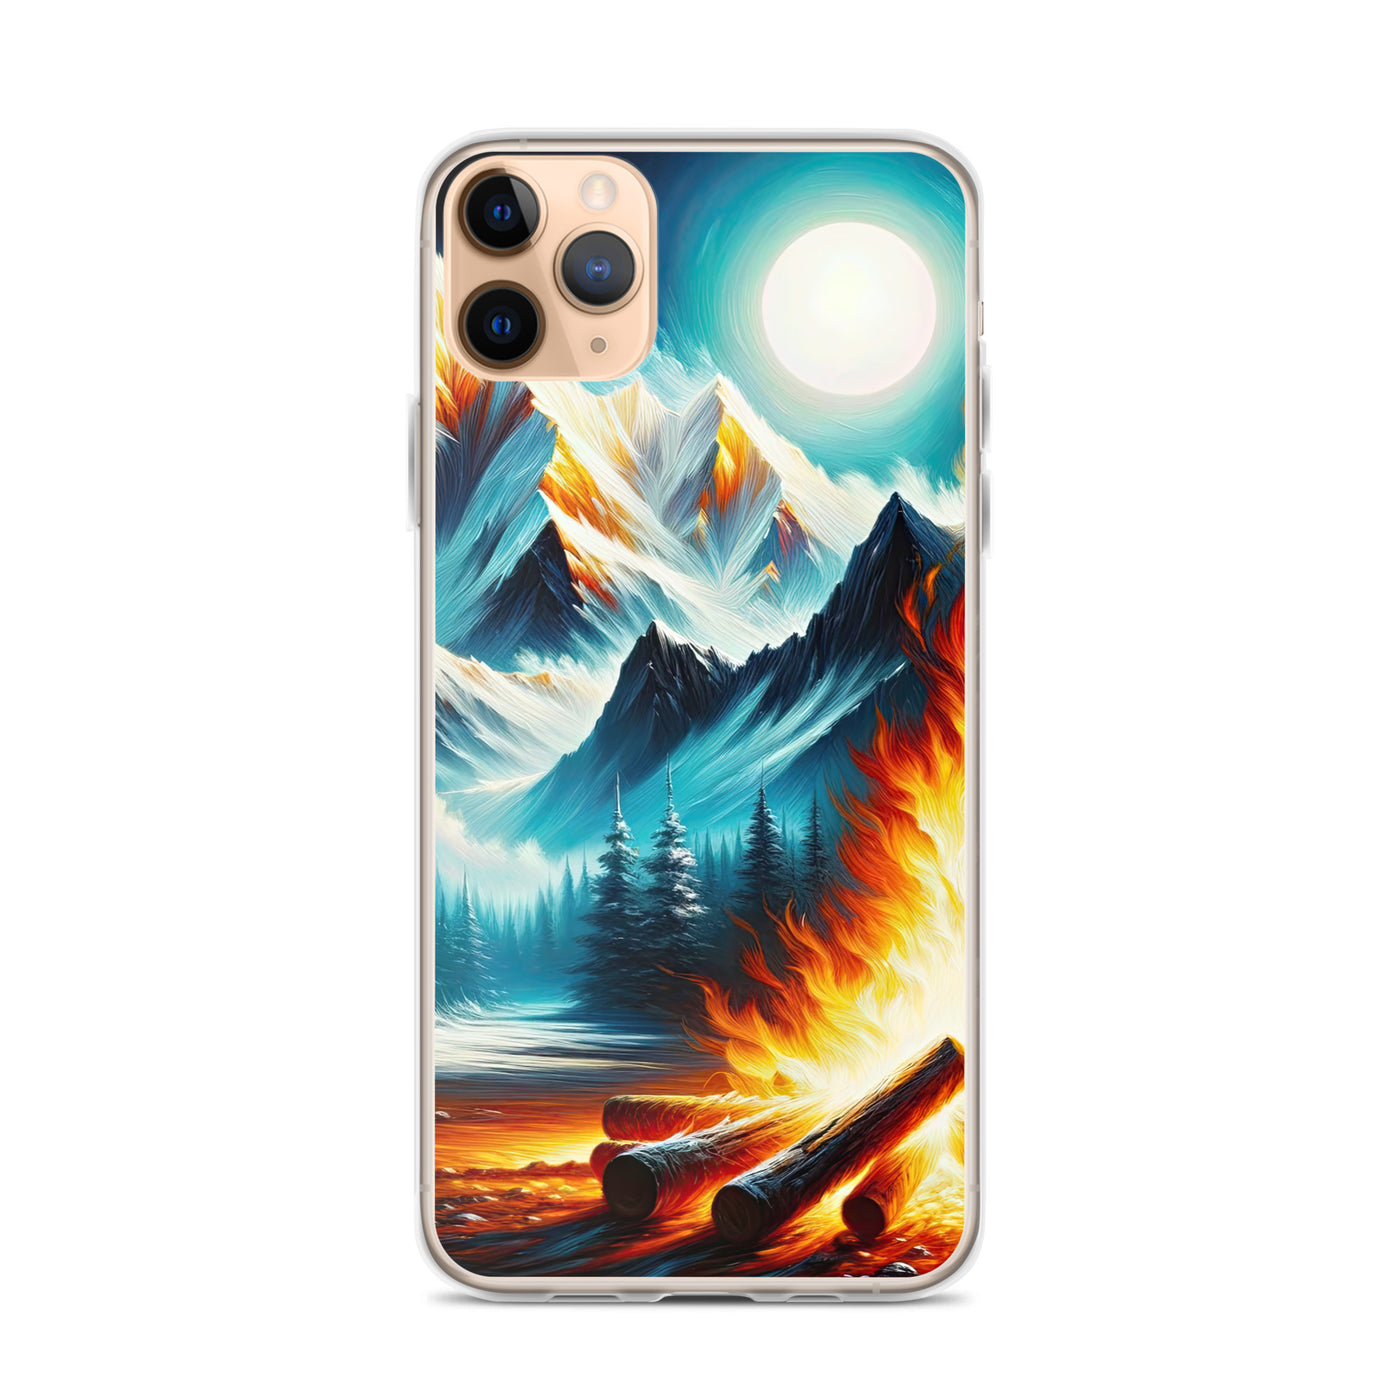 Ölgemälde von Feuer und Eis: Lagerfeuer und Alpen im Kontrast, warme Flammen - iPhone Schutzhülle (durchsichtig) camping xxx yyy zzz iPhone 11 Pro Max